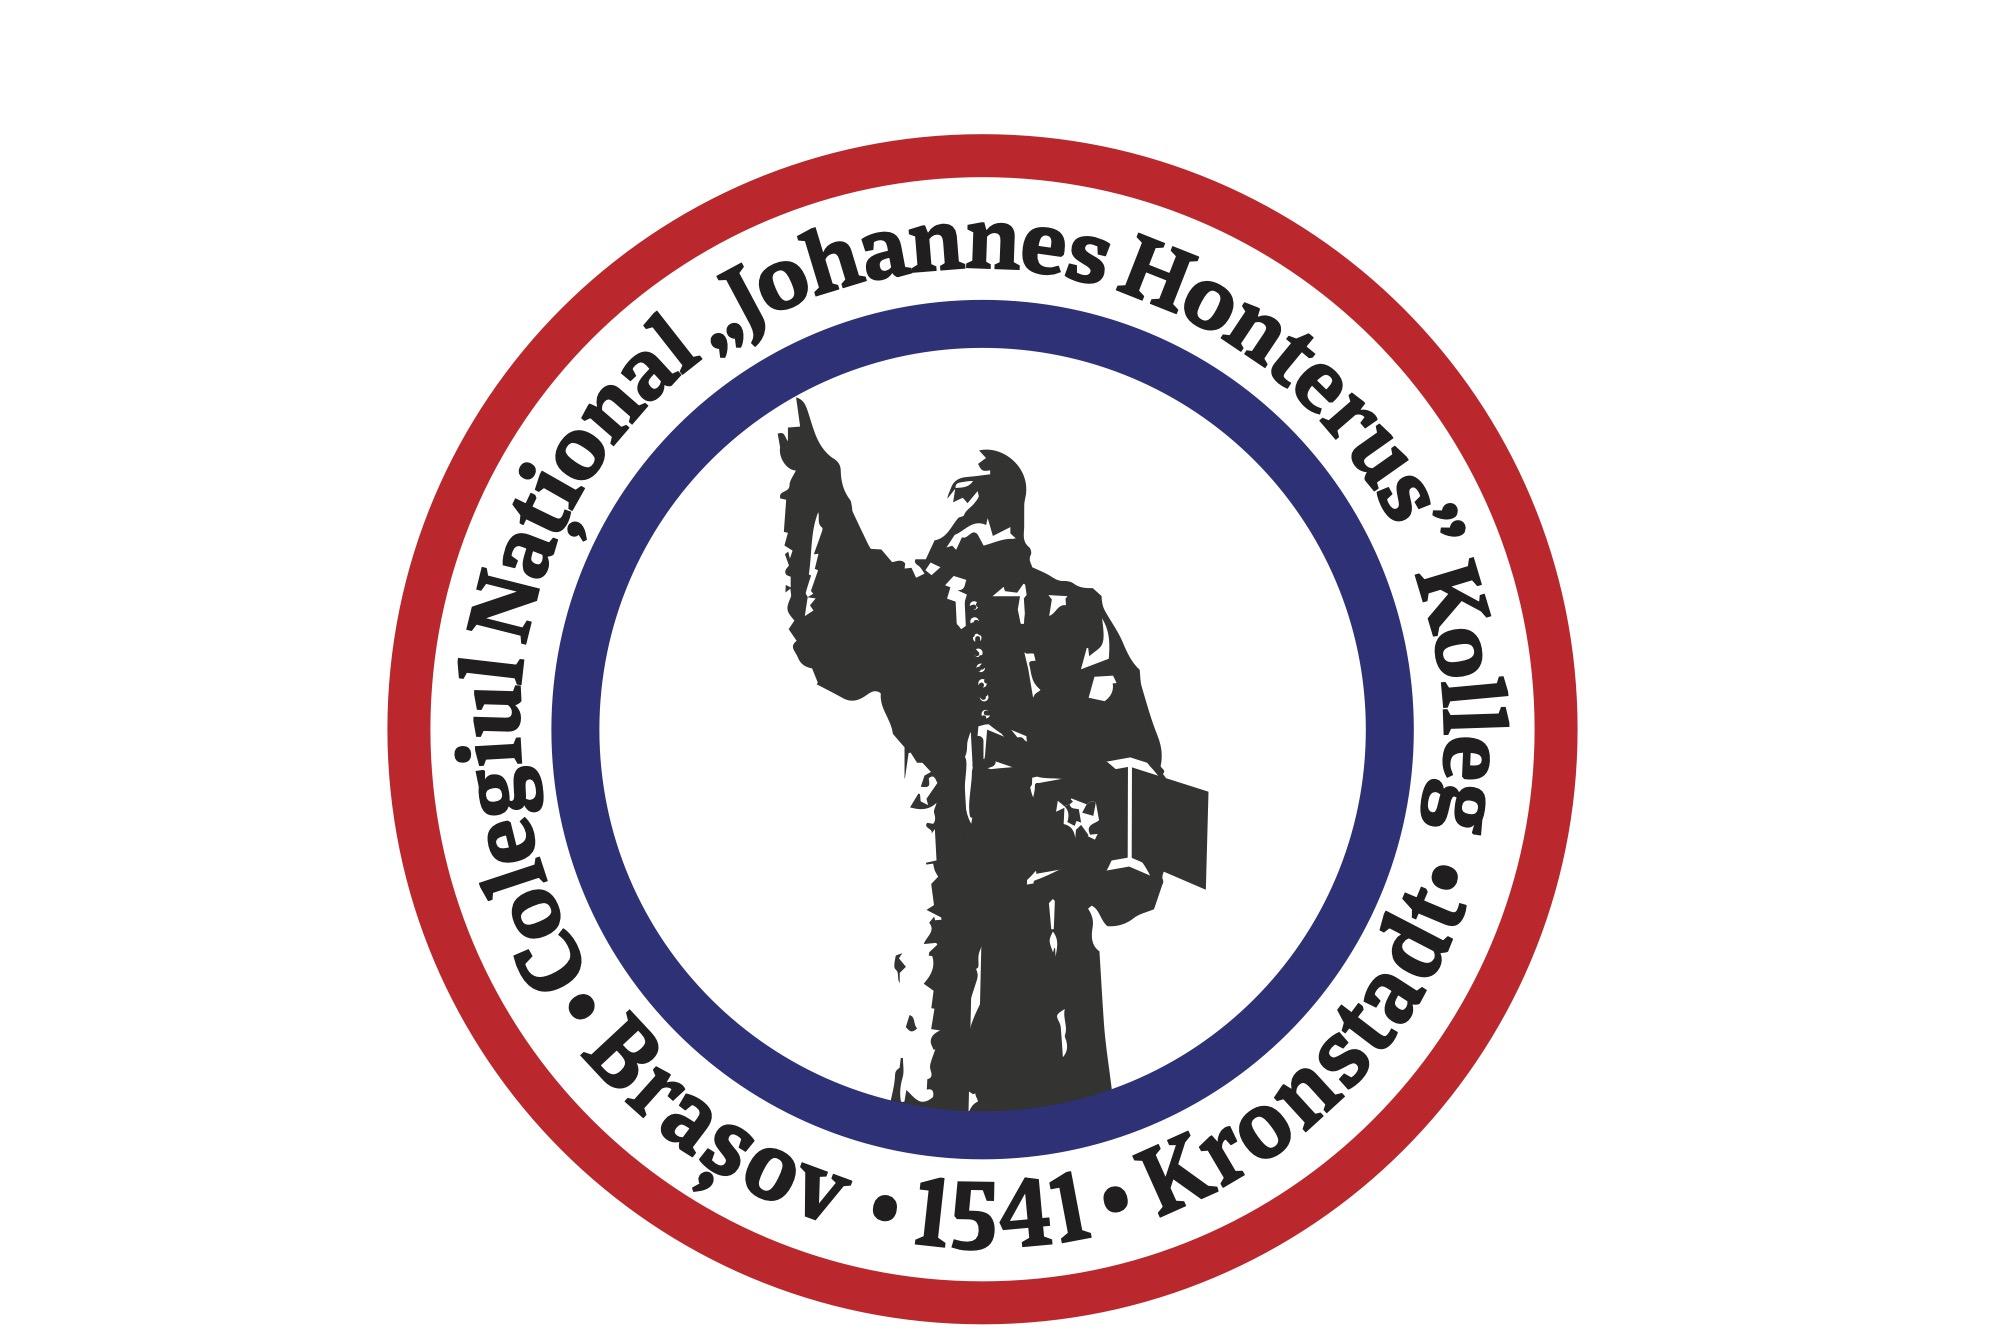 Colegiul Național "Johannes Honterus"